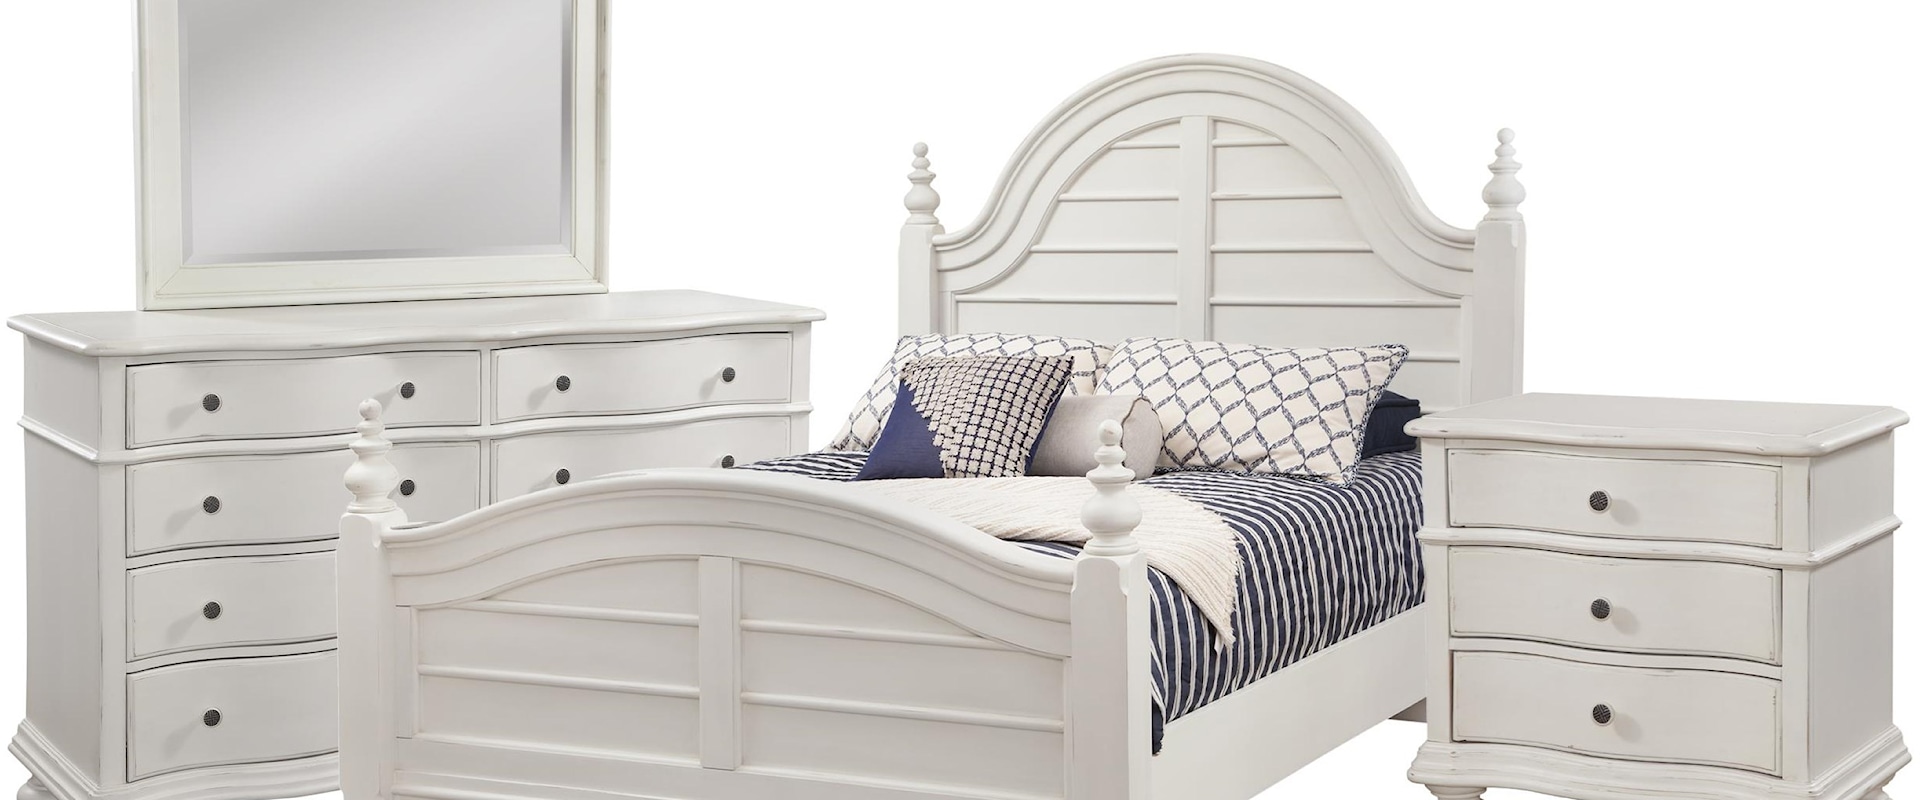 Queen Poster Bed, 8 Drawer Dresser, Landscape Mirror, 3 Drawer Nightstand